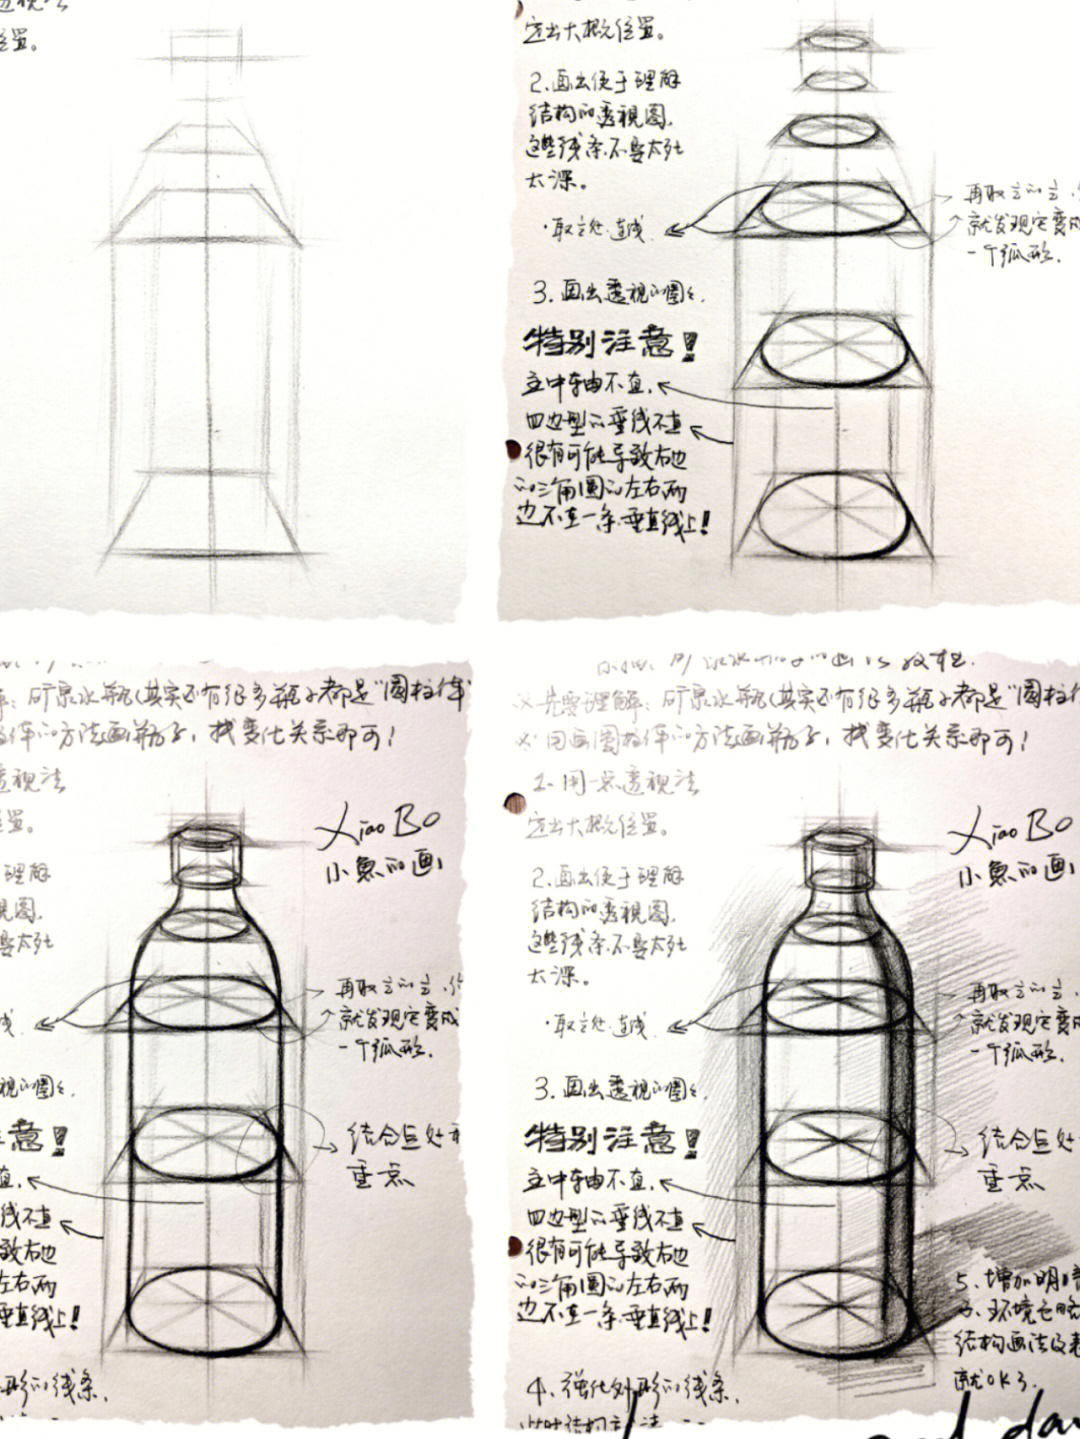 瓶子素描 结构图图片